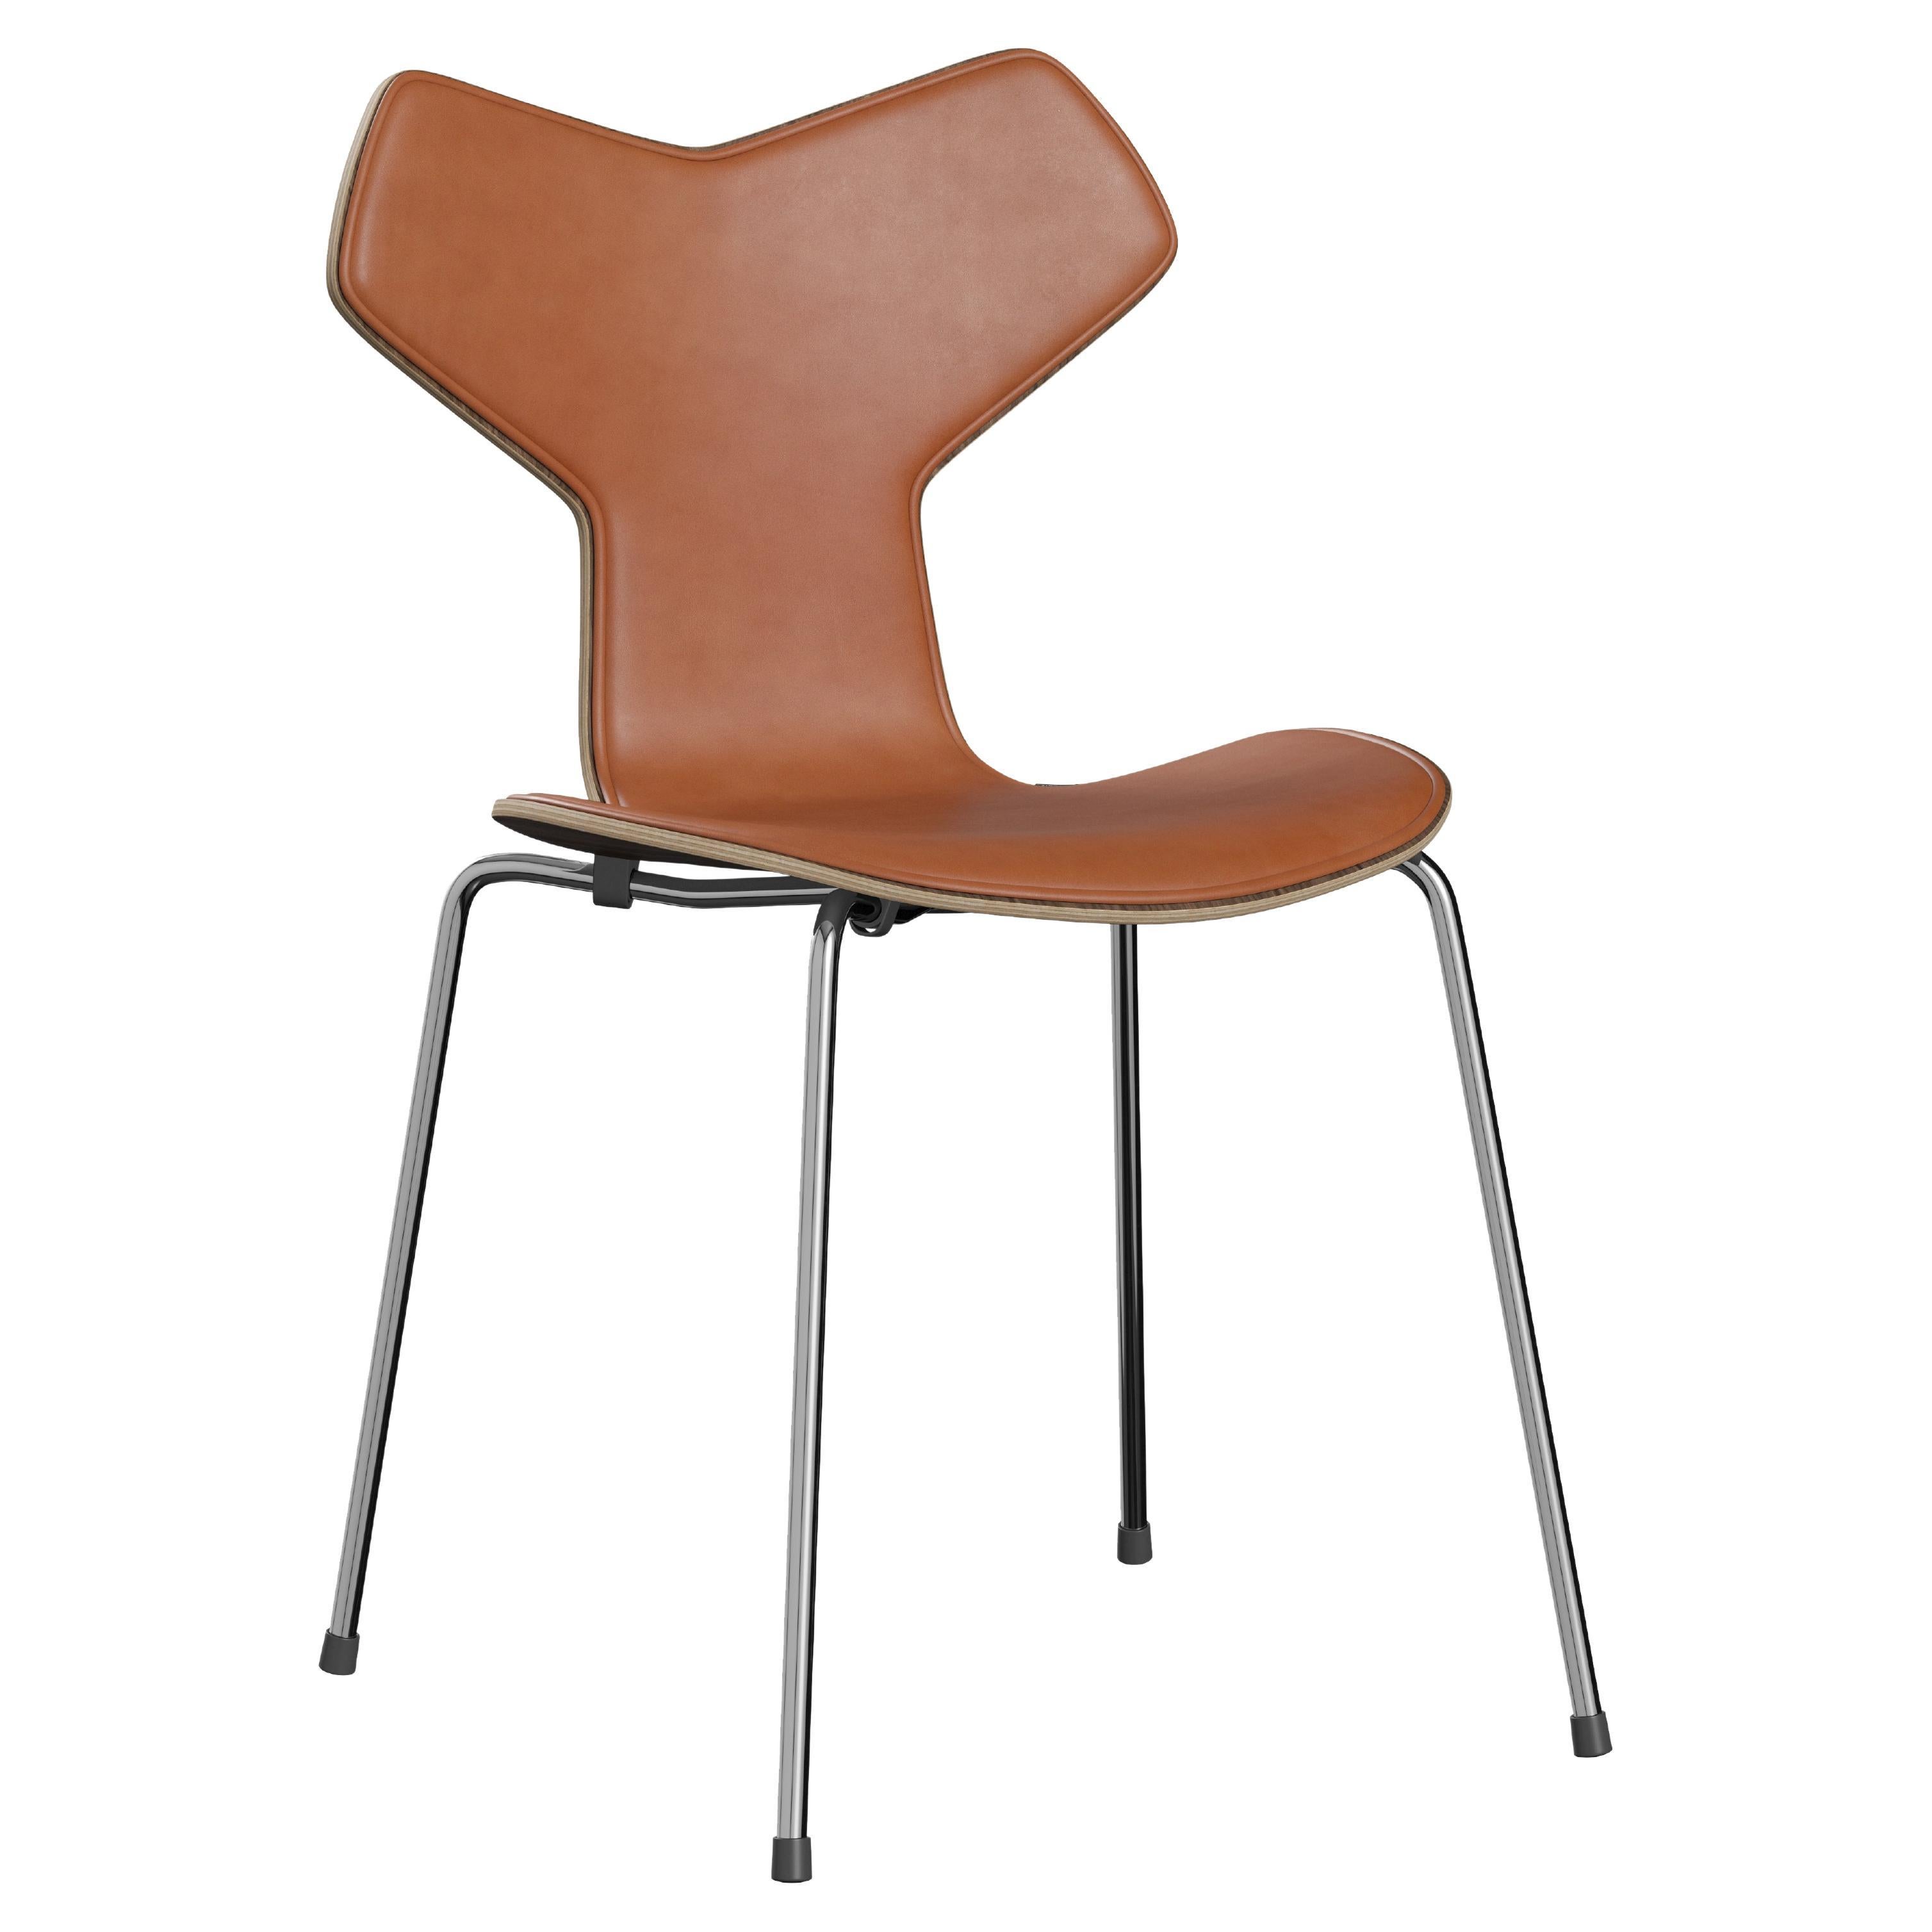 Chaise Grand Prix d'Arne Jacobsen pour Fritz Hansen avec revêtement partiel en cuir